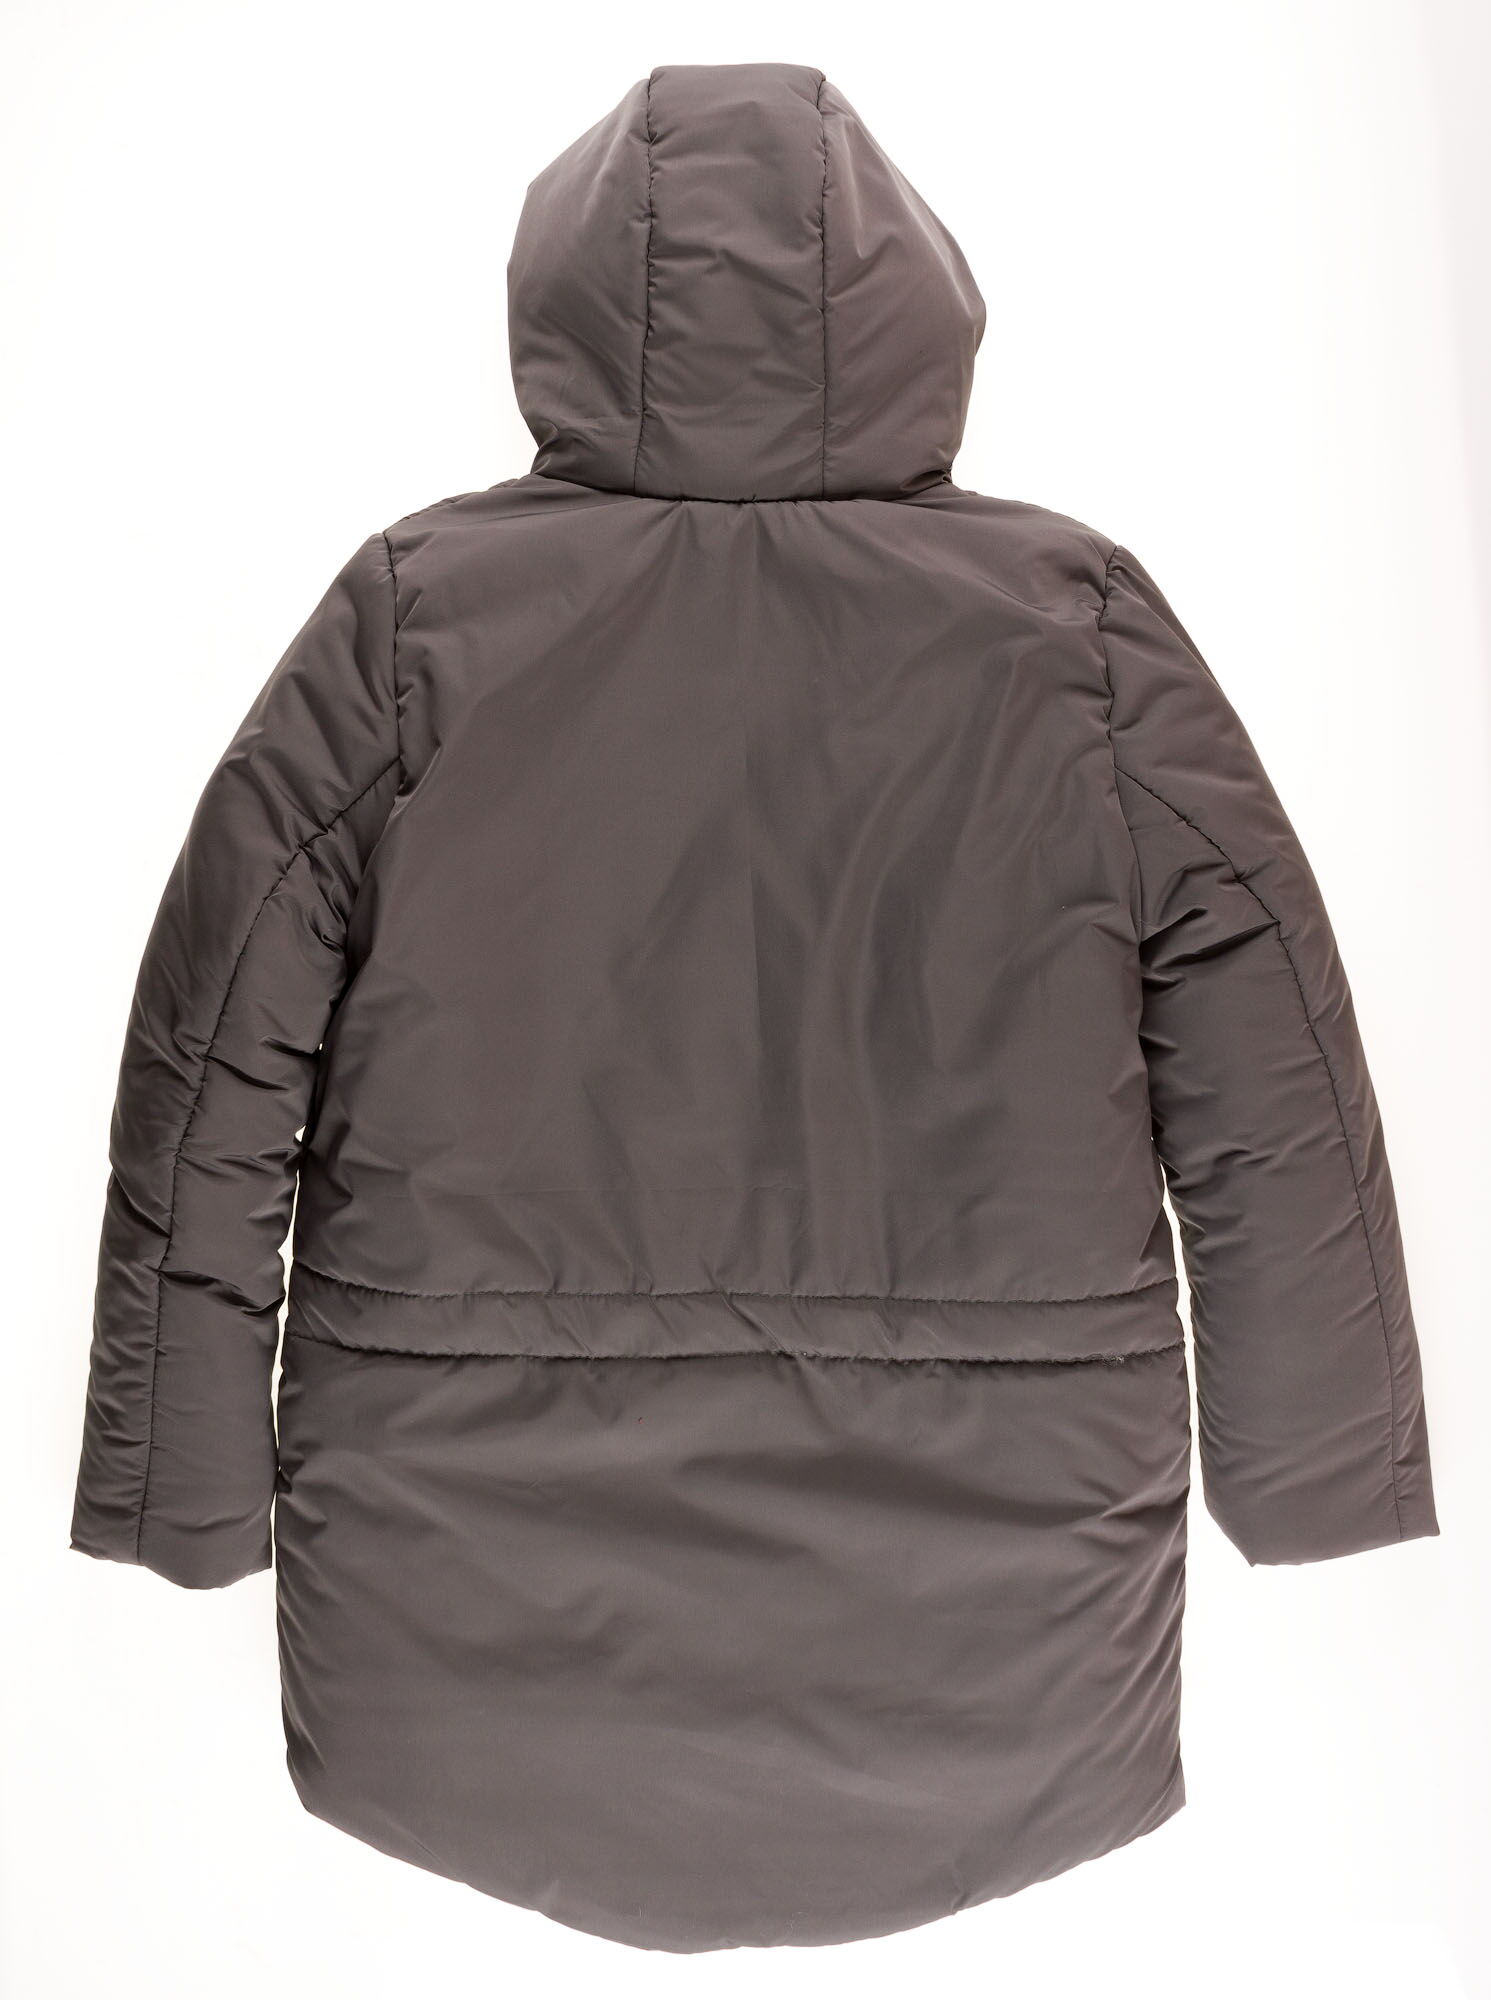 Куртка зимняя для мальчика Одягайко серая 20091 - размеры